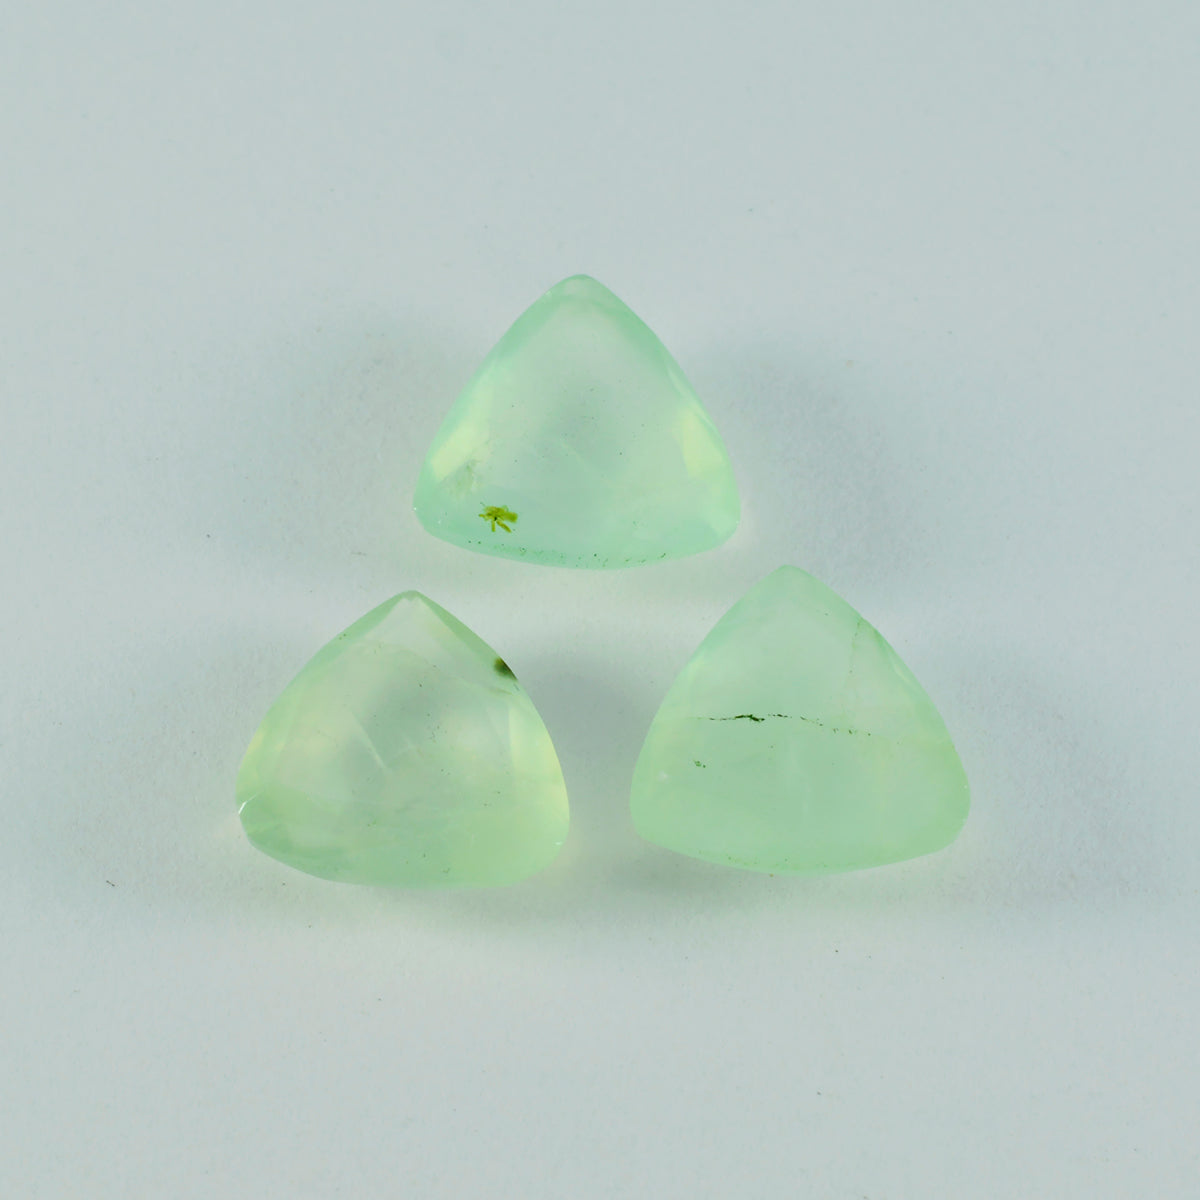 riyogems 1 pieza de prehnita verde facetada de 7x7 mm con forma de billón, piedra preciosa suelta de excelente calidad